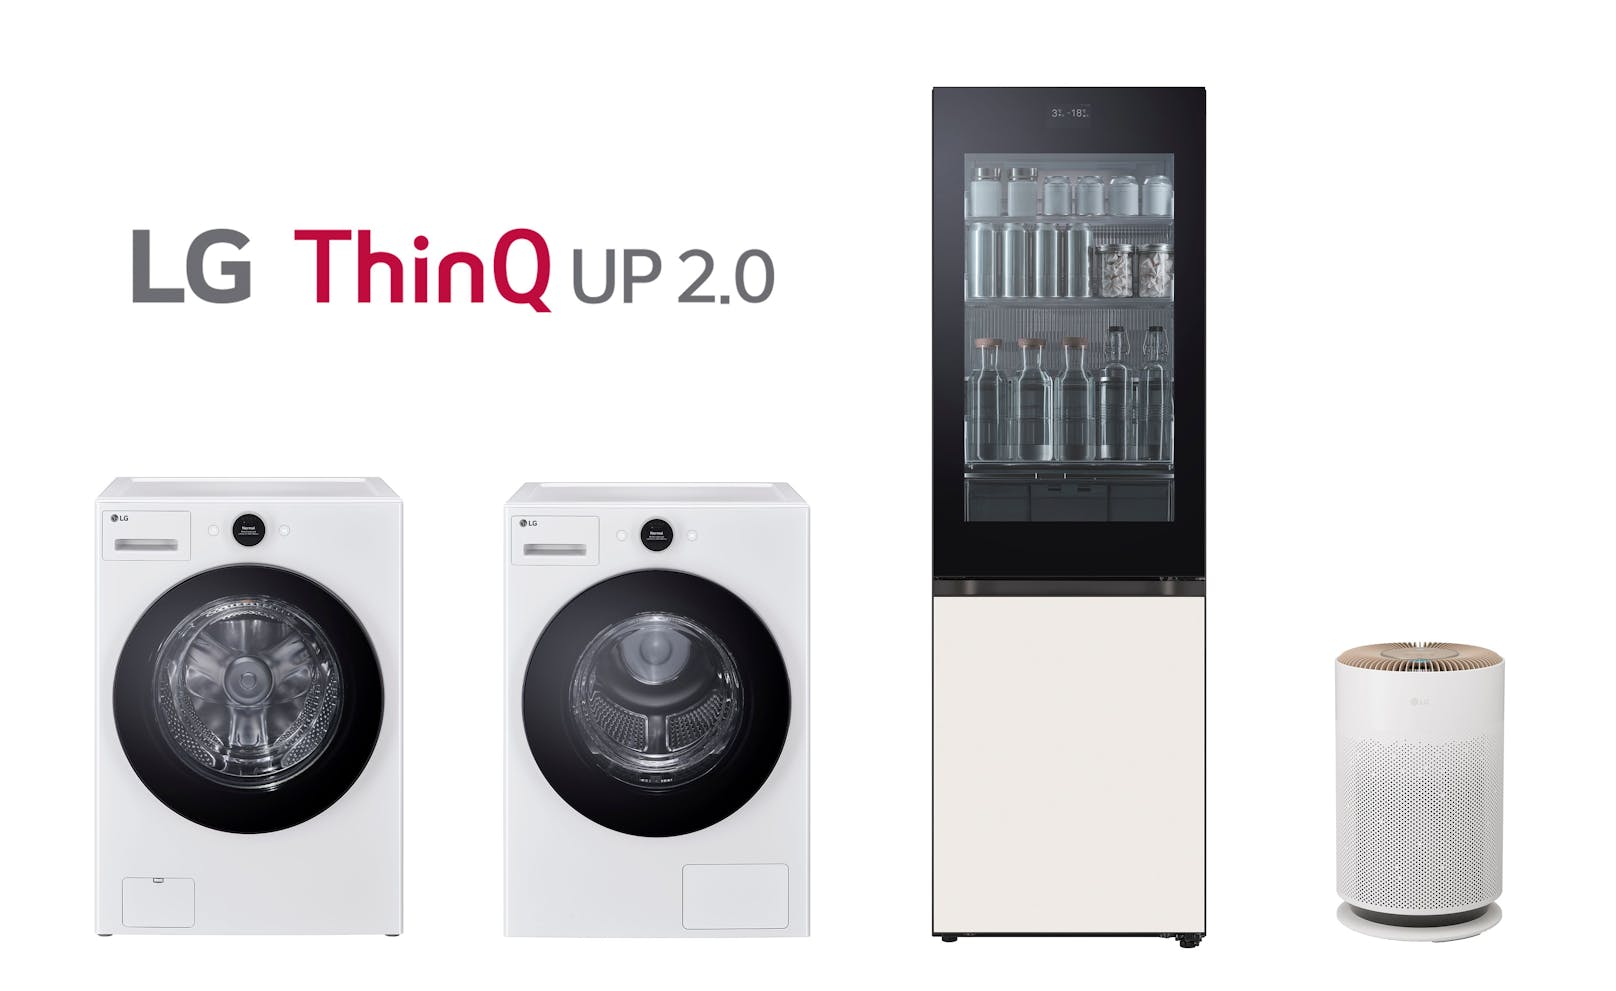 ThinQ UP 2.0 macht LG zum Experten für personalisierte Haushaltsgeräte.